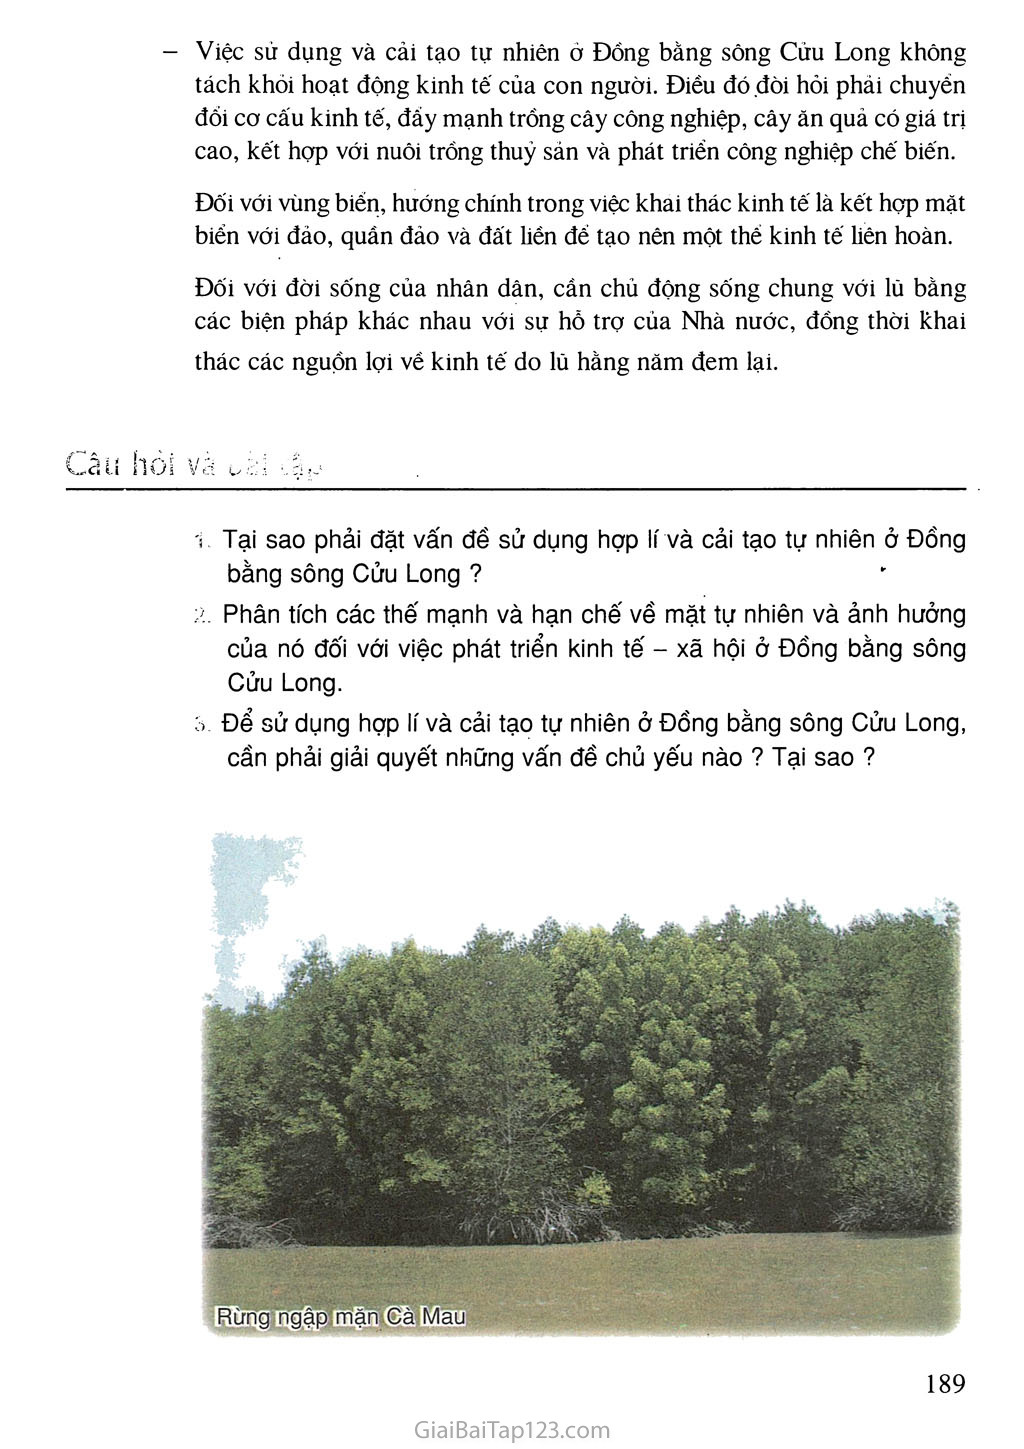 Bài 41. Vấn đề sử dụng hợp lí và cải tạo tự nhiên ở Đồng bằng sông Cửu Long trang 5